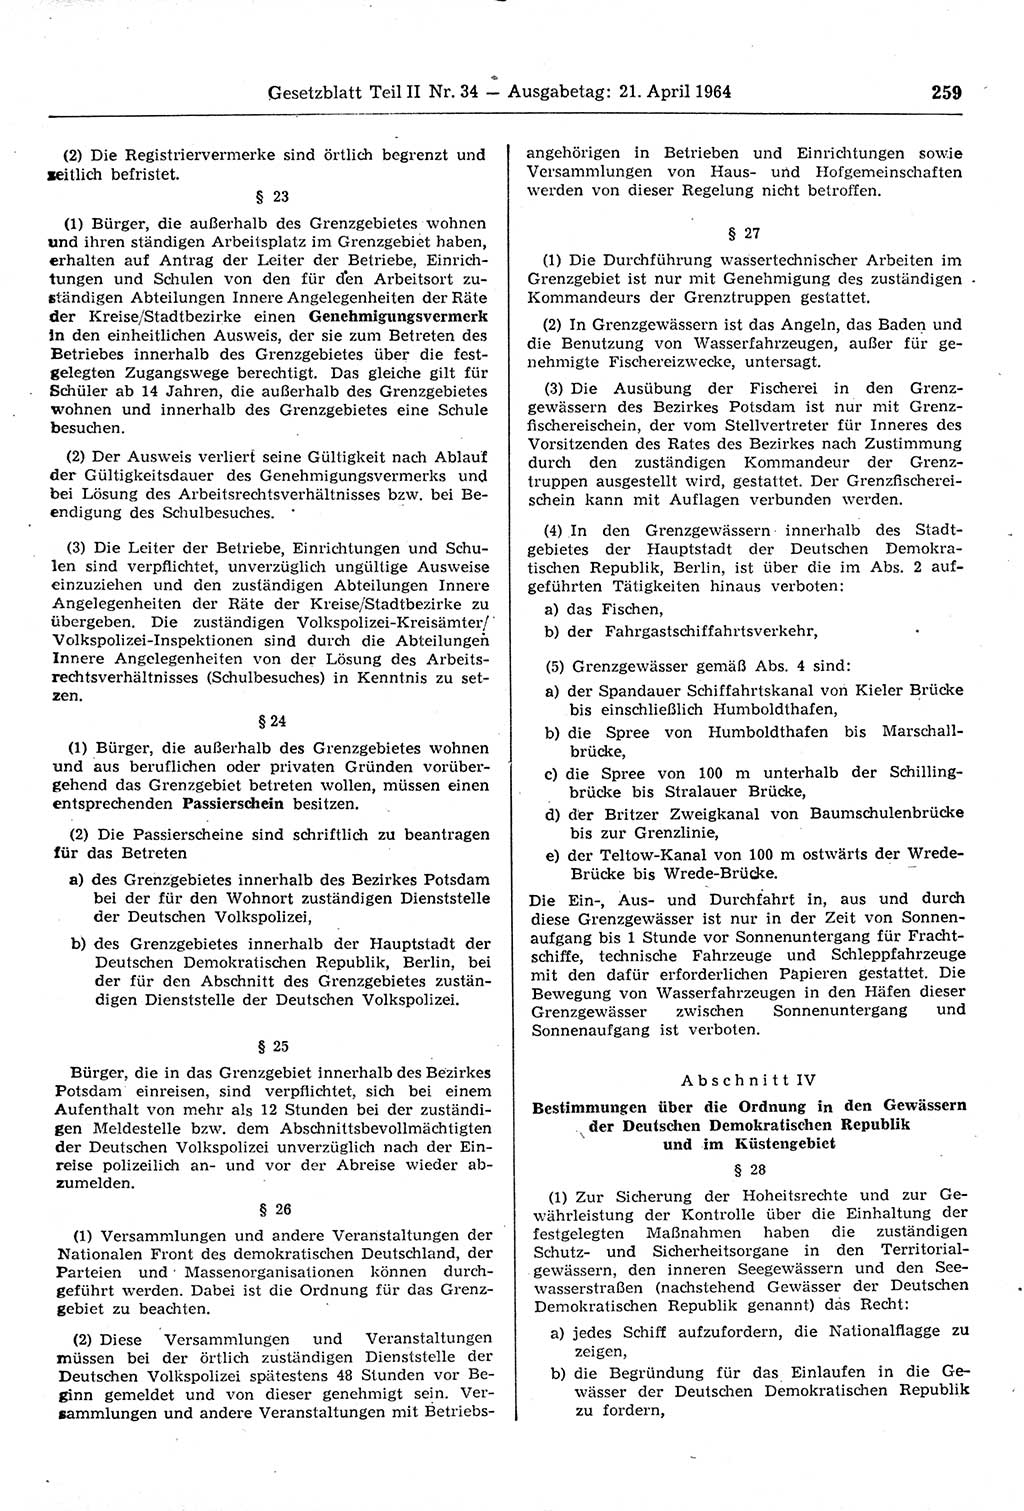 Gesetzblatt (GBl.) der Deutschen Demokratischen Republik (DDR) Teil ⅠⅠ 1964, Seite 259 (GBl. DDR ⅠⅠ 1964, S. 259)